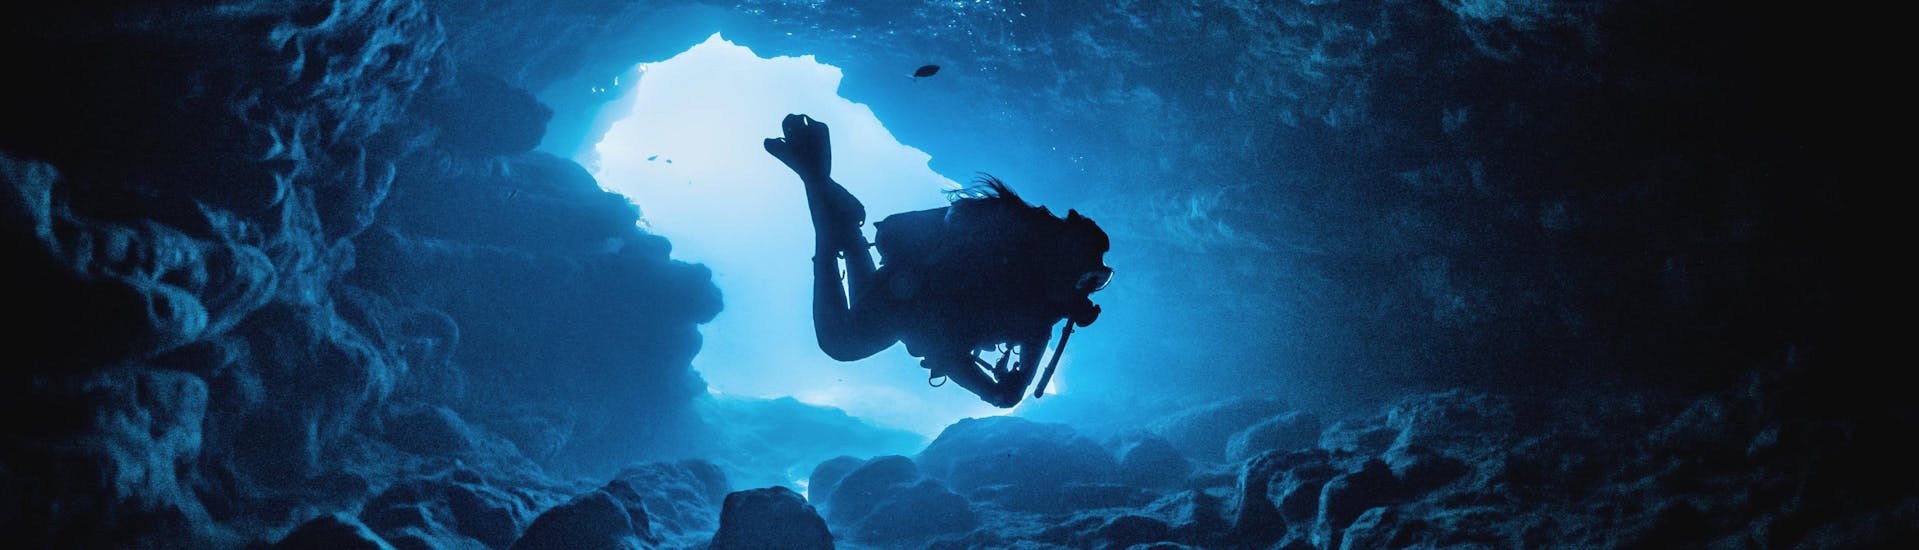 Un sub sta esplorando una delle tante grotte intorno alla costa di Malta, una delle famose destinazioni di immersione in Europa.